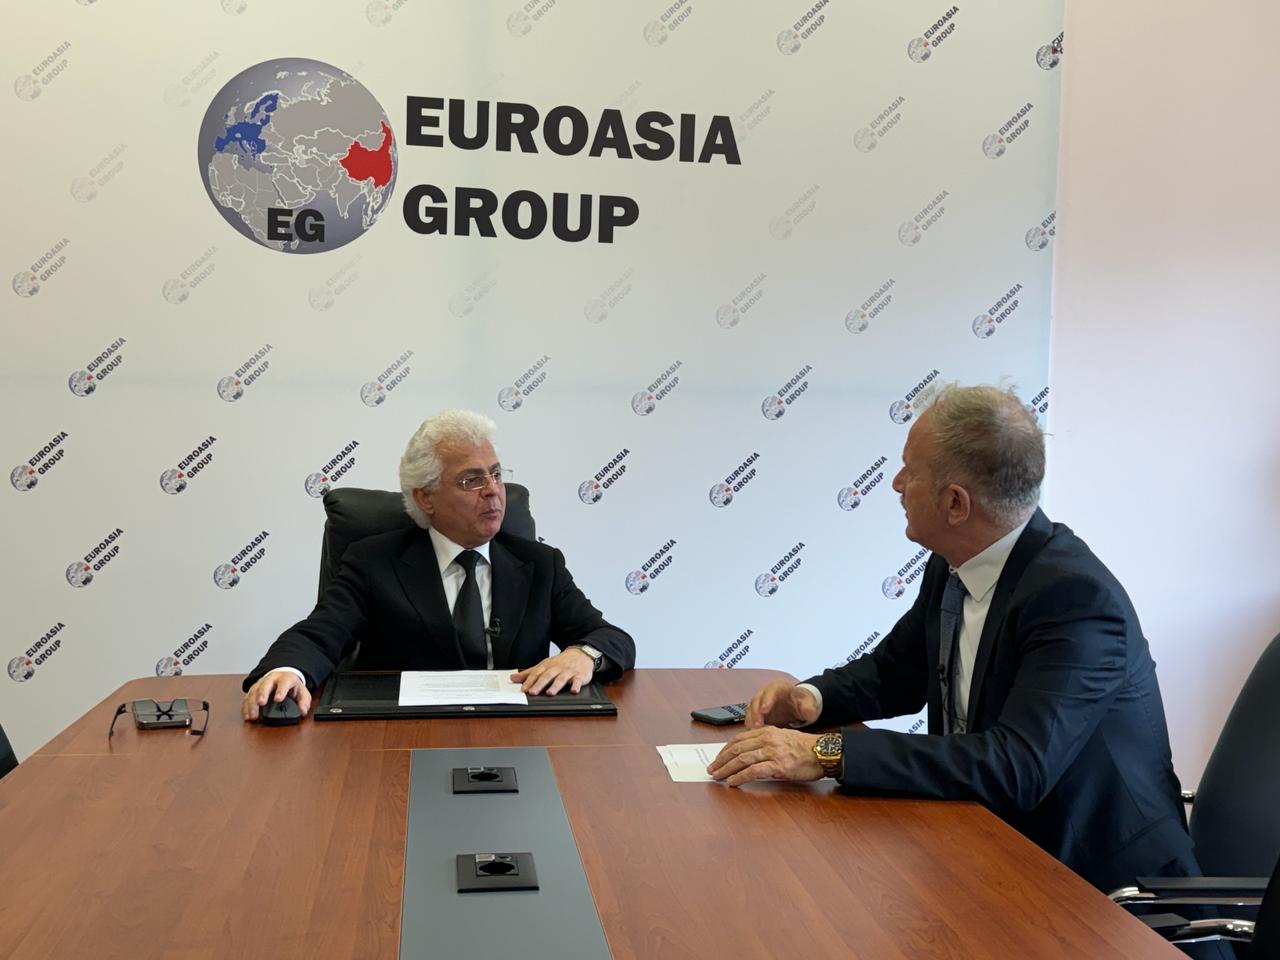 Ilirjan Koxhioni president i Euroasia Group në intervistë për CMG